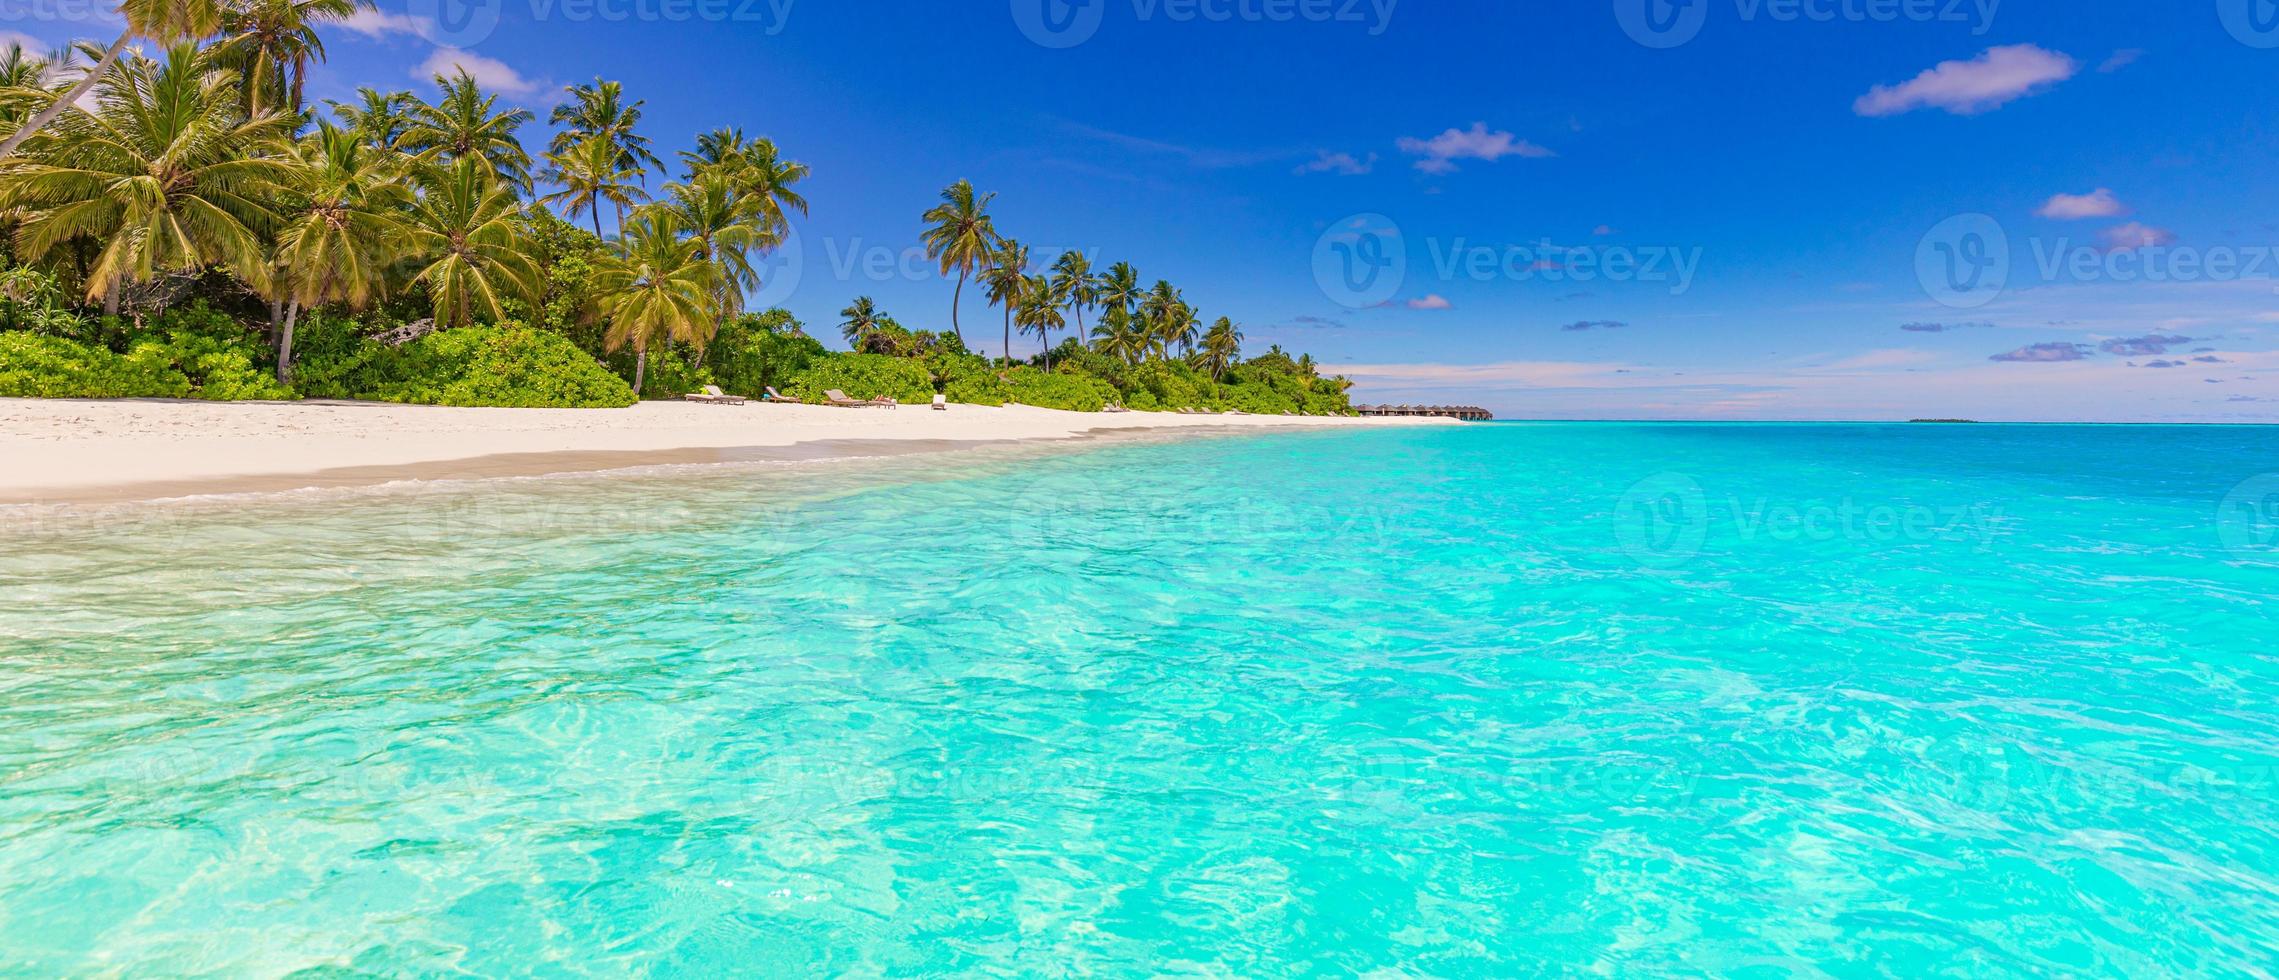 plage panoramique de l'île des maldives. panorama d'été de paysage tropical, sable blanc avec mer de palmiers. destination de vacances de voyage de luxe. paysage de plage exotique. nature incroyable, détente, liberté nature photo